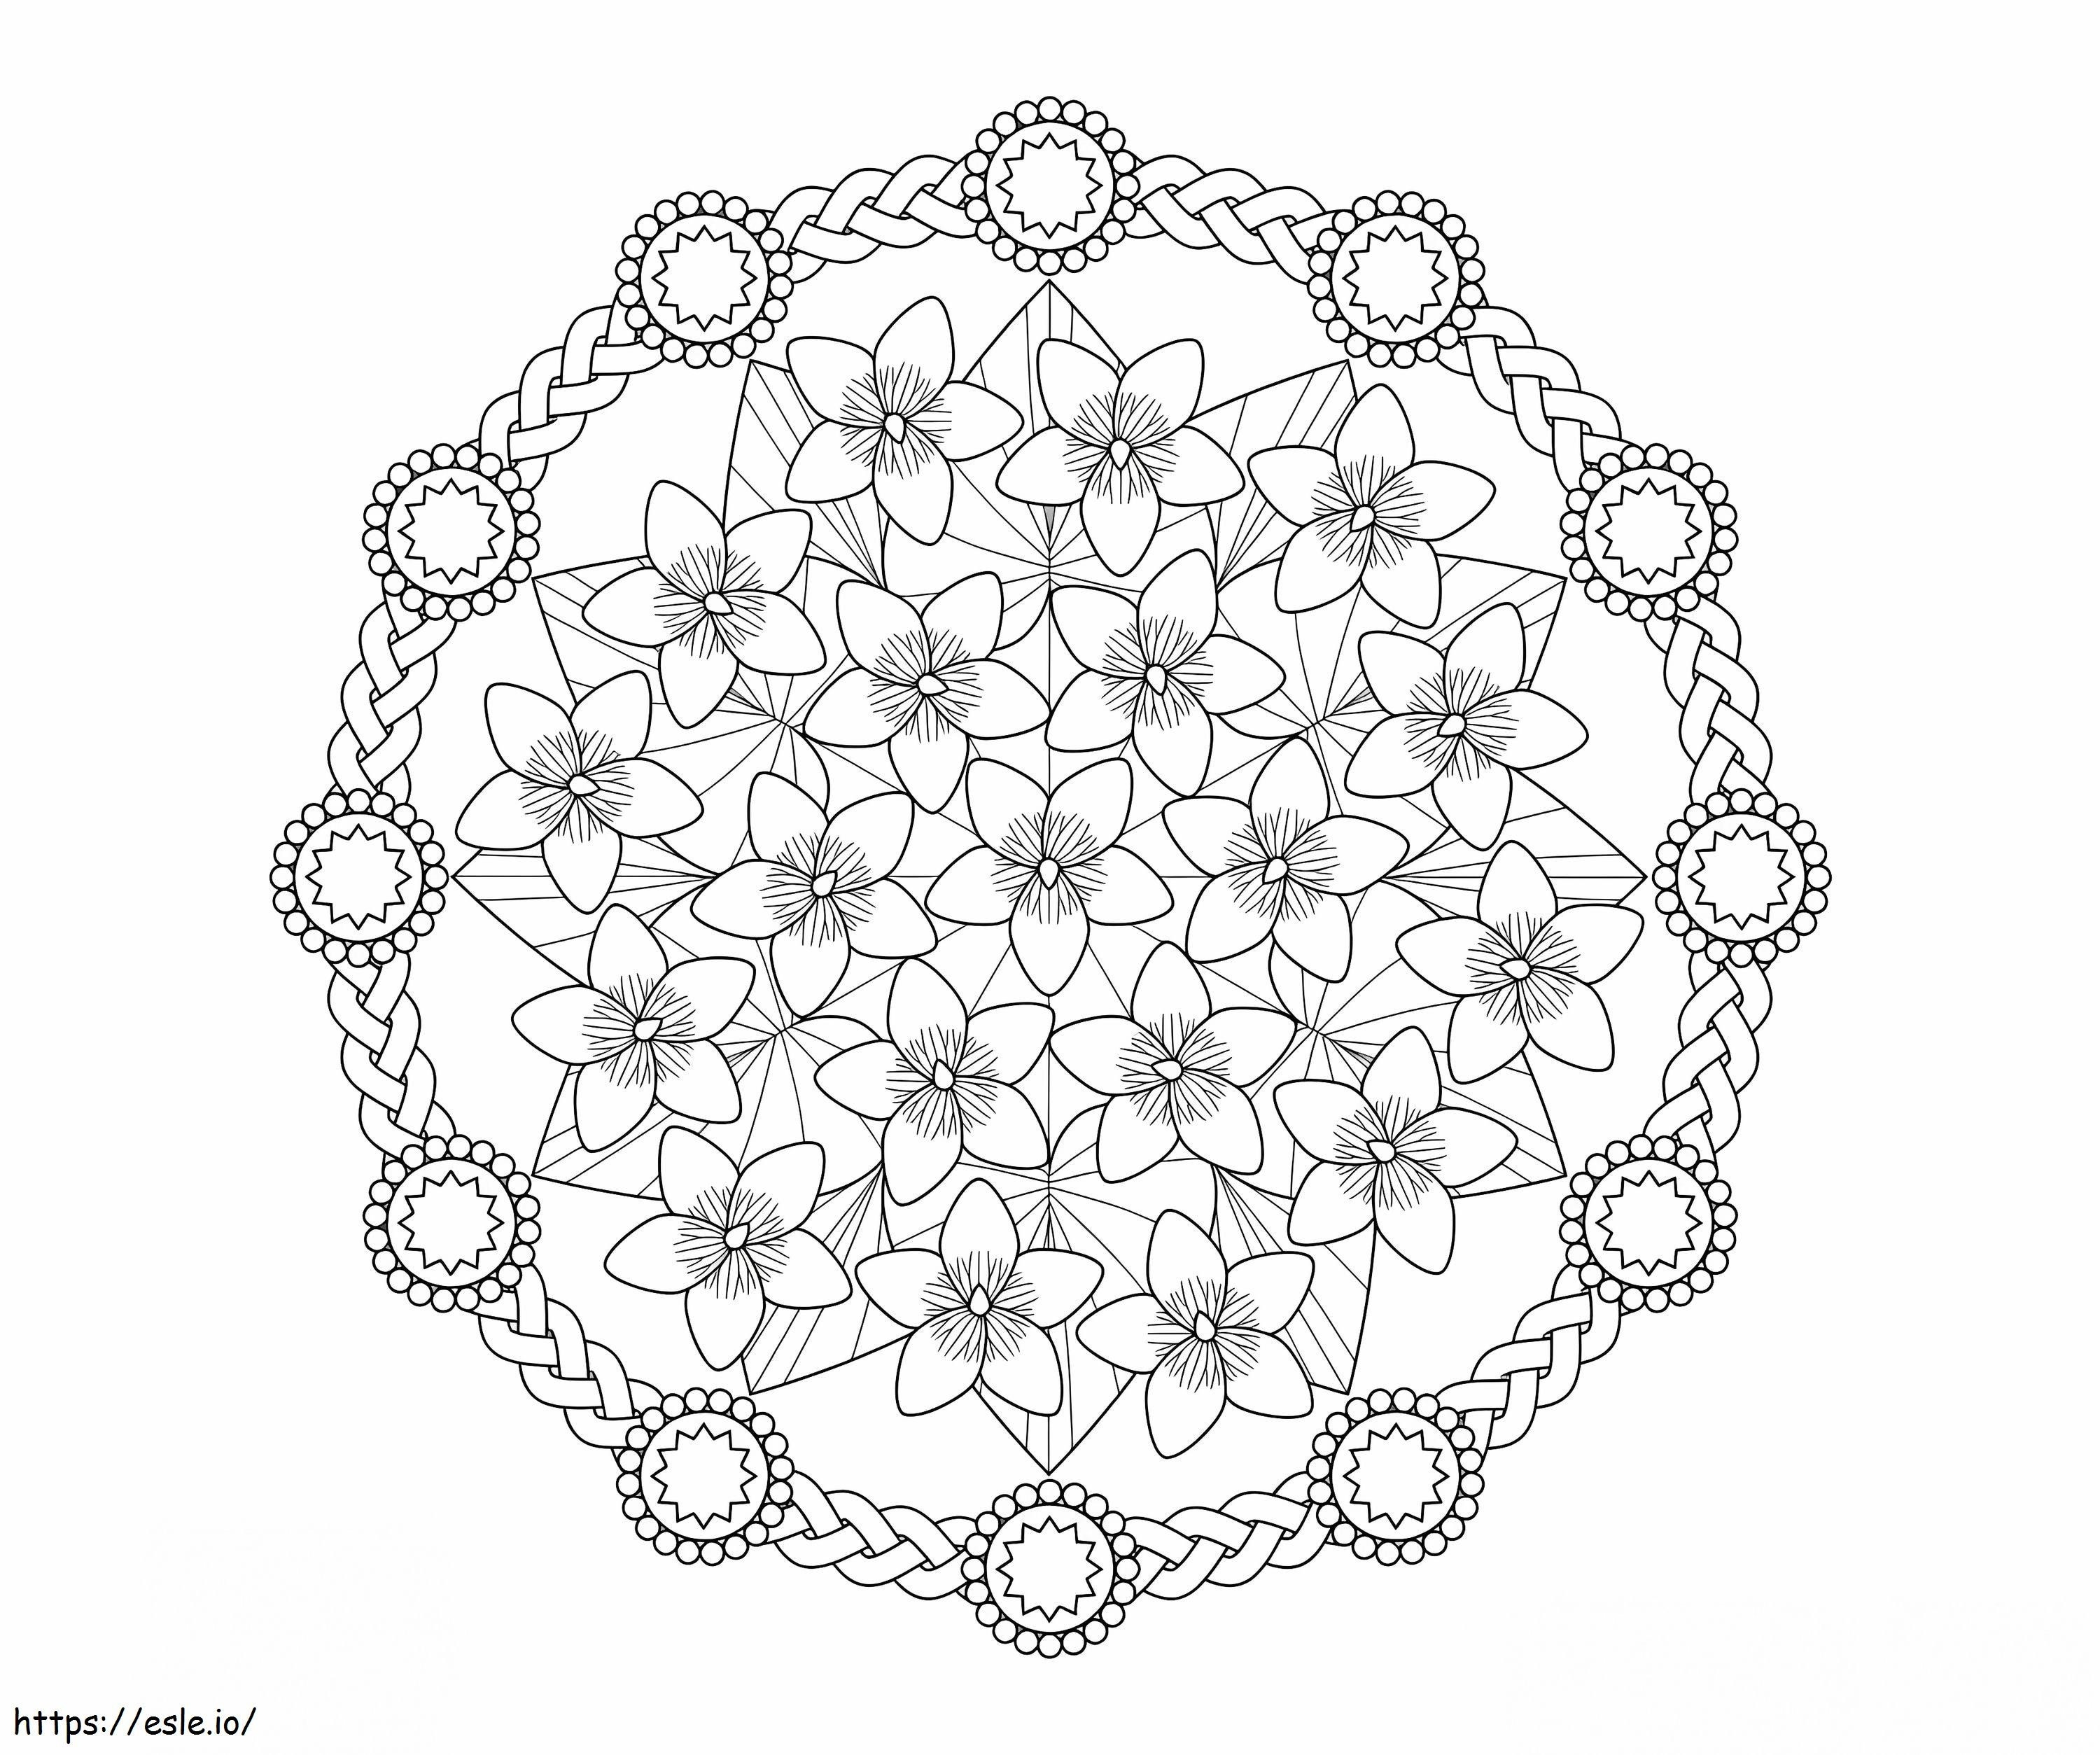 Coloriage Mandala de printemps 2 à imprimer dessin